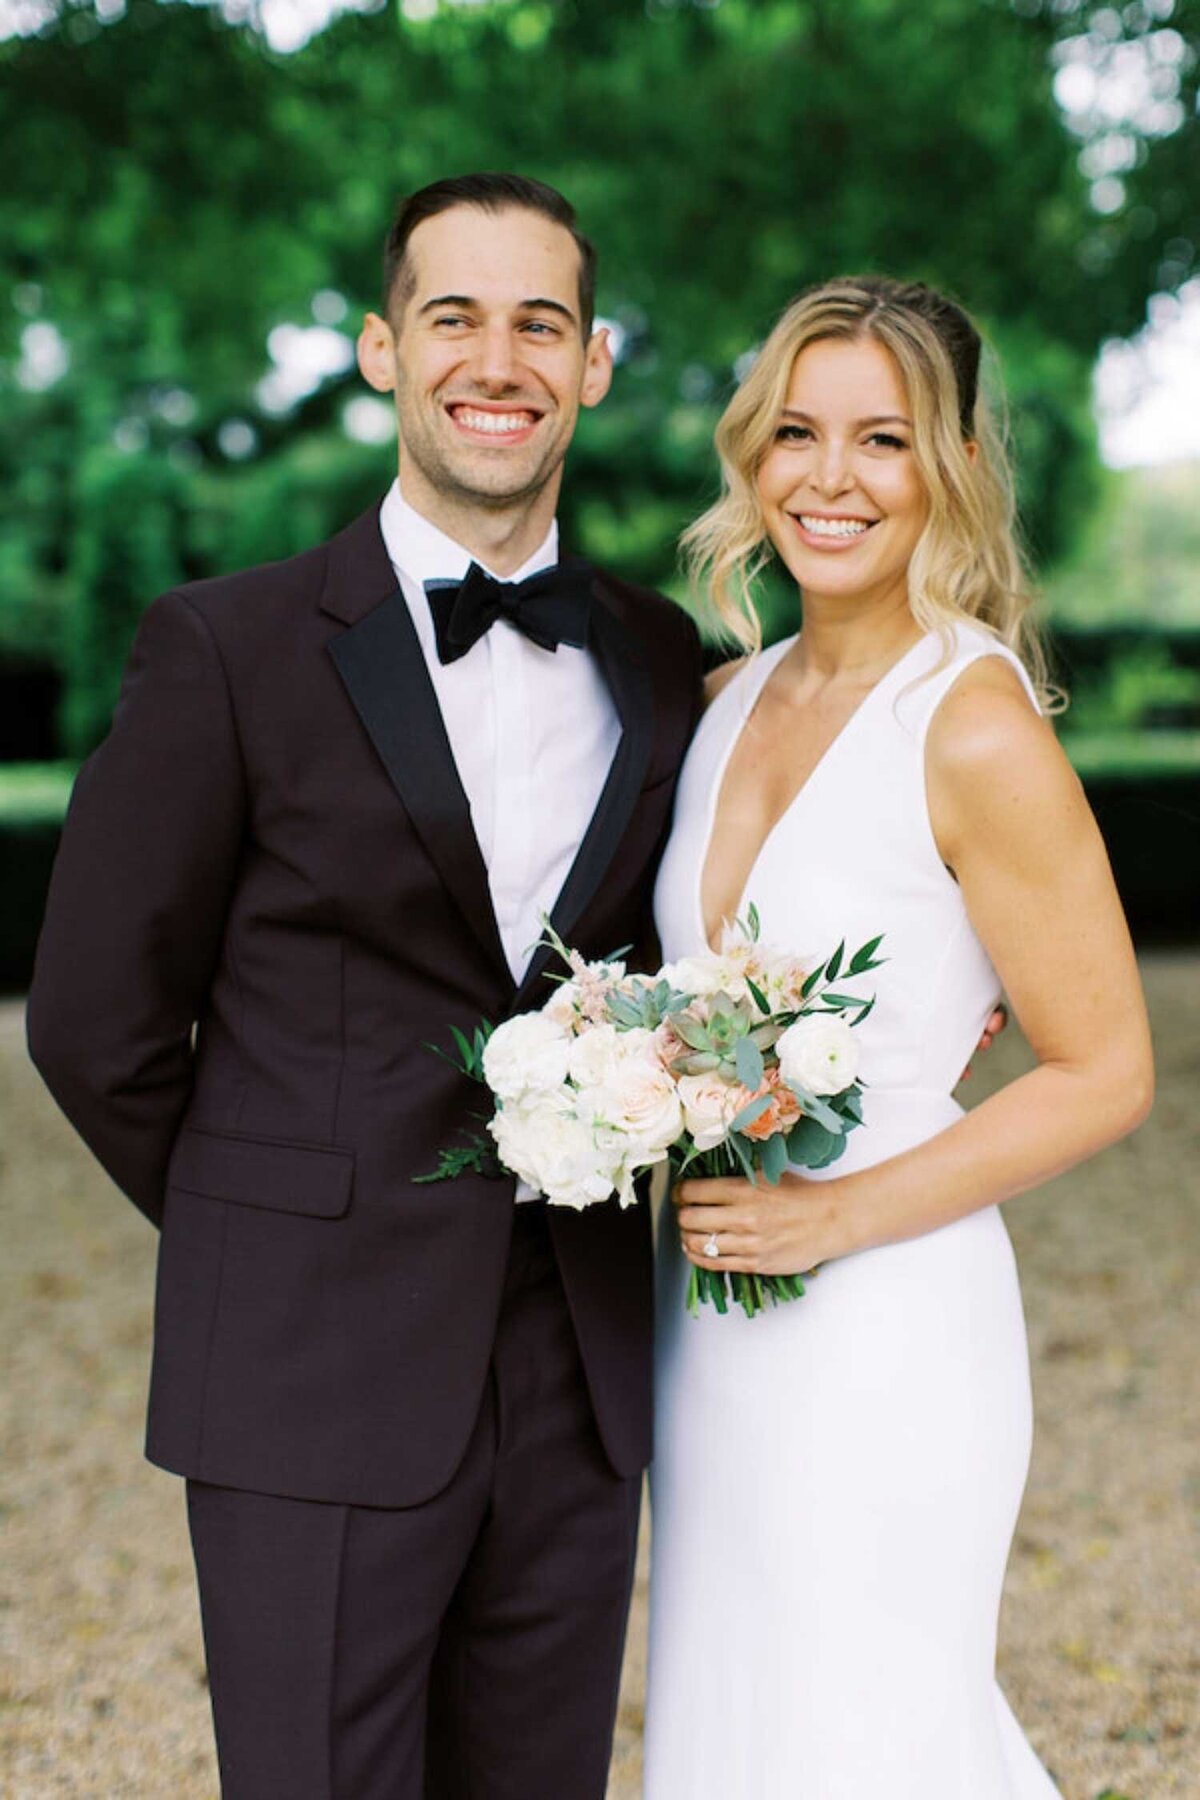 Modern bride and groom in black tie attire at a luxury Chicago outdoor garden wedding.